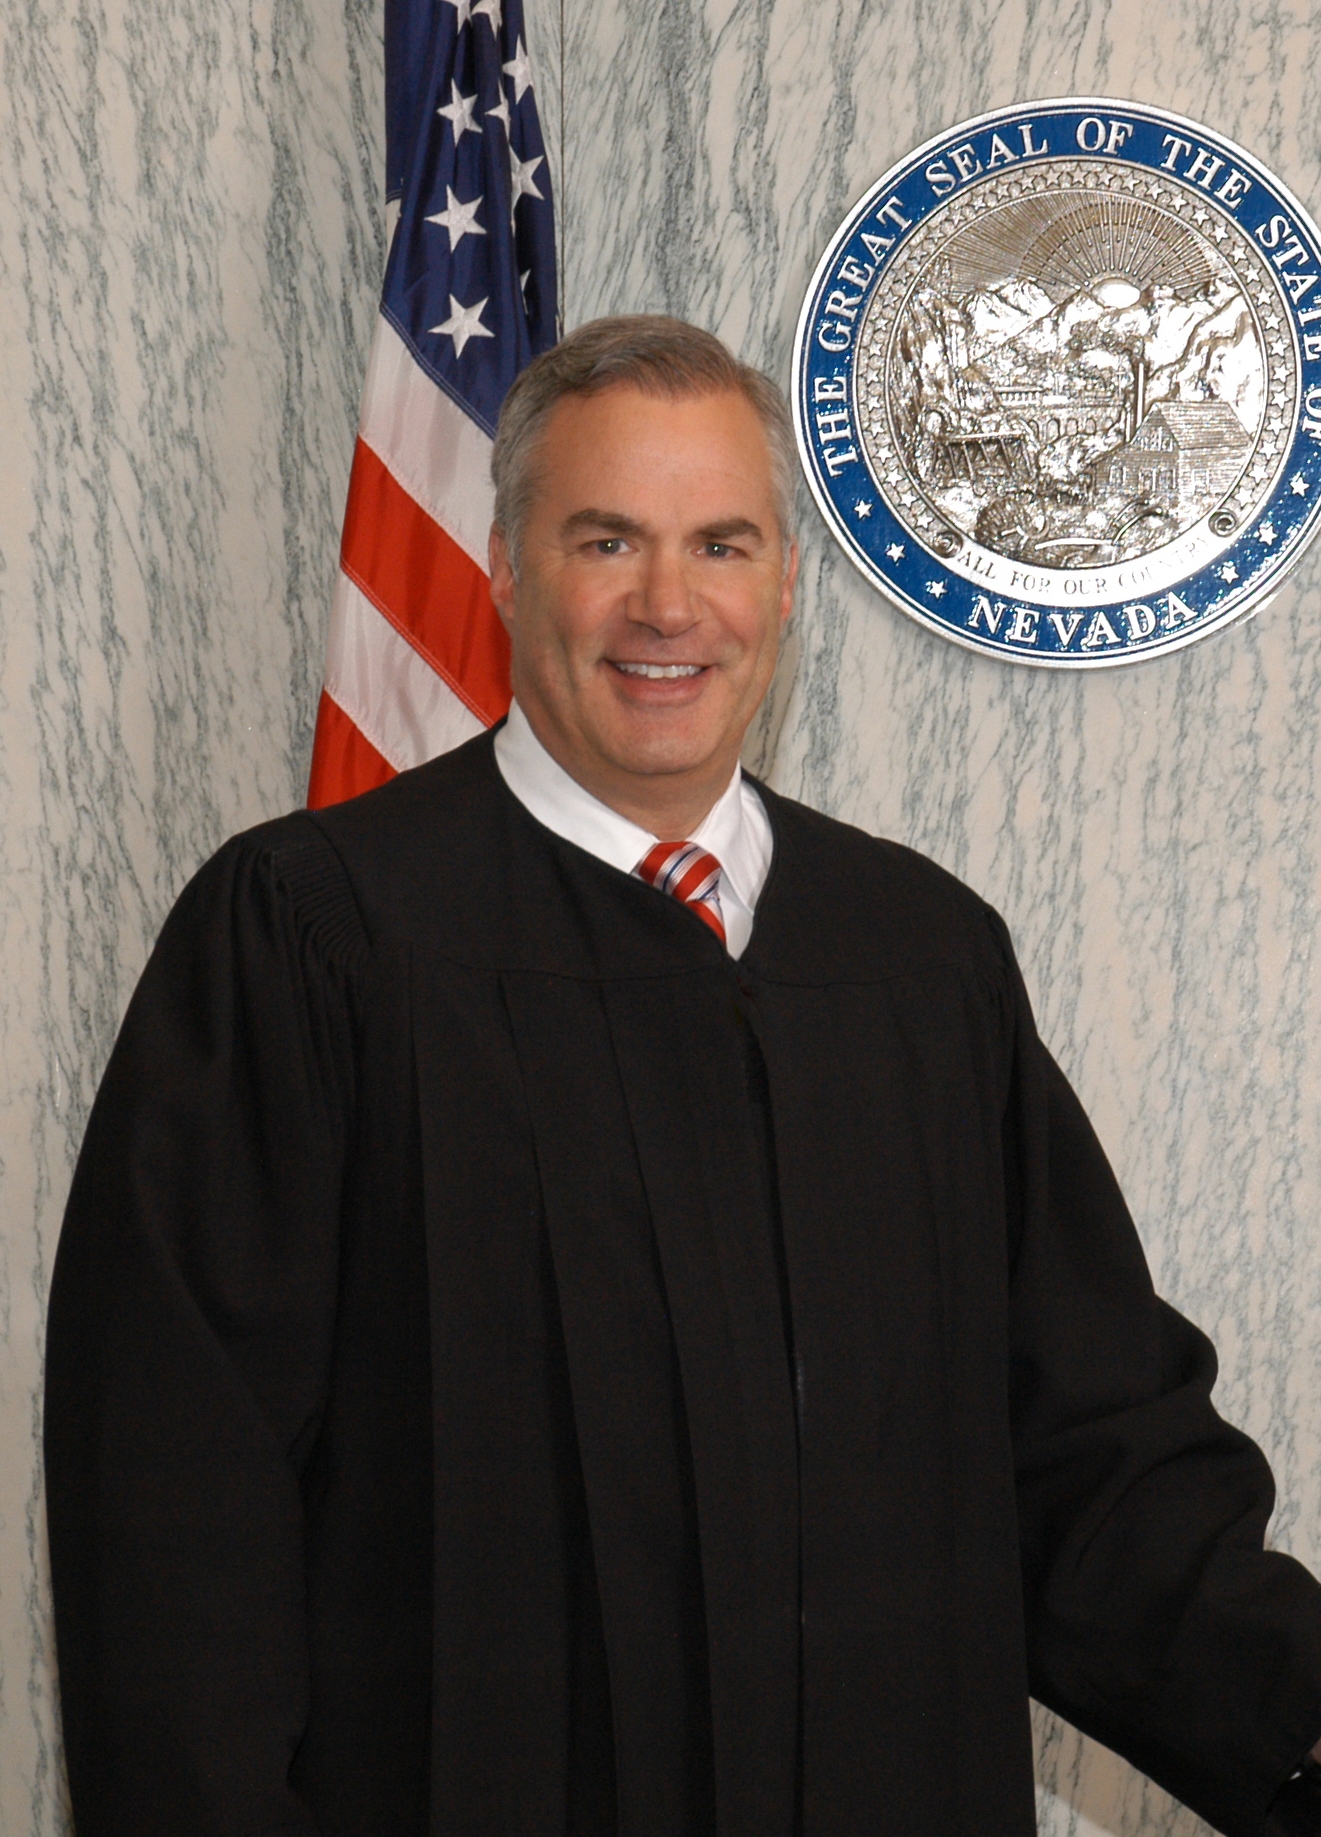 Judge Steinheimer